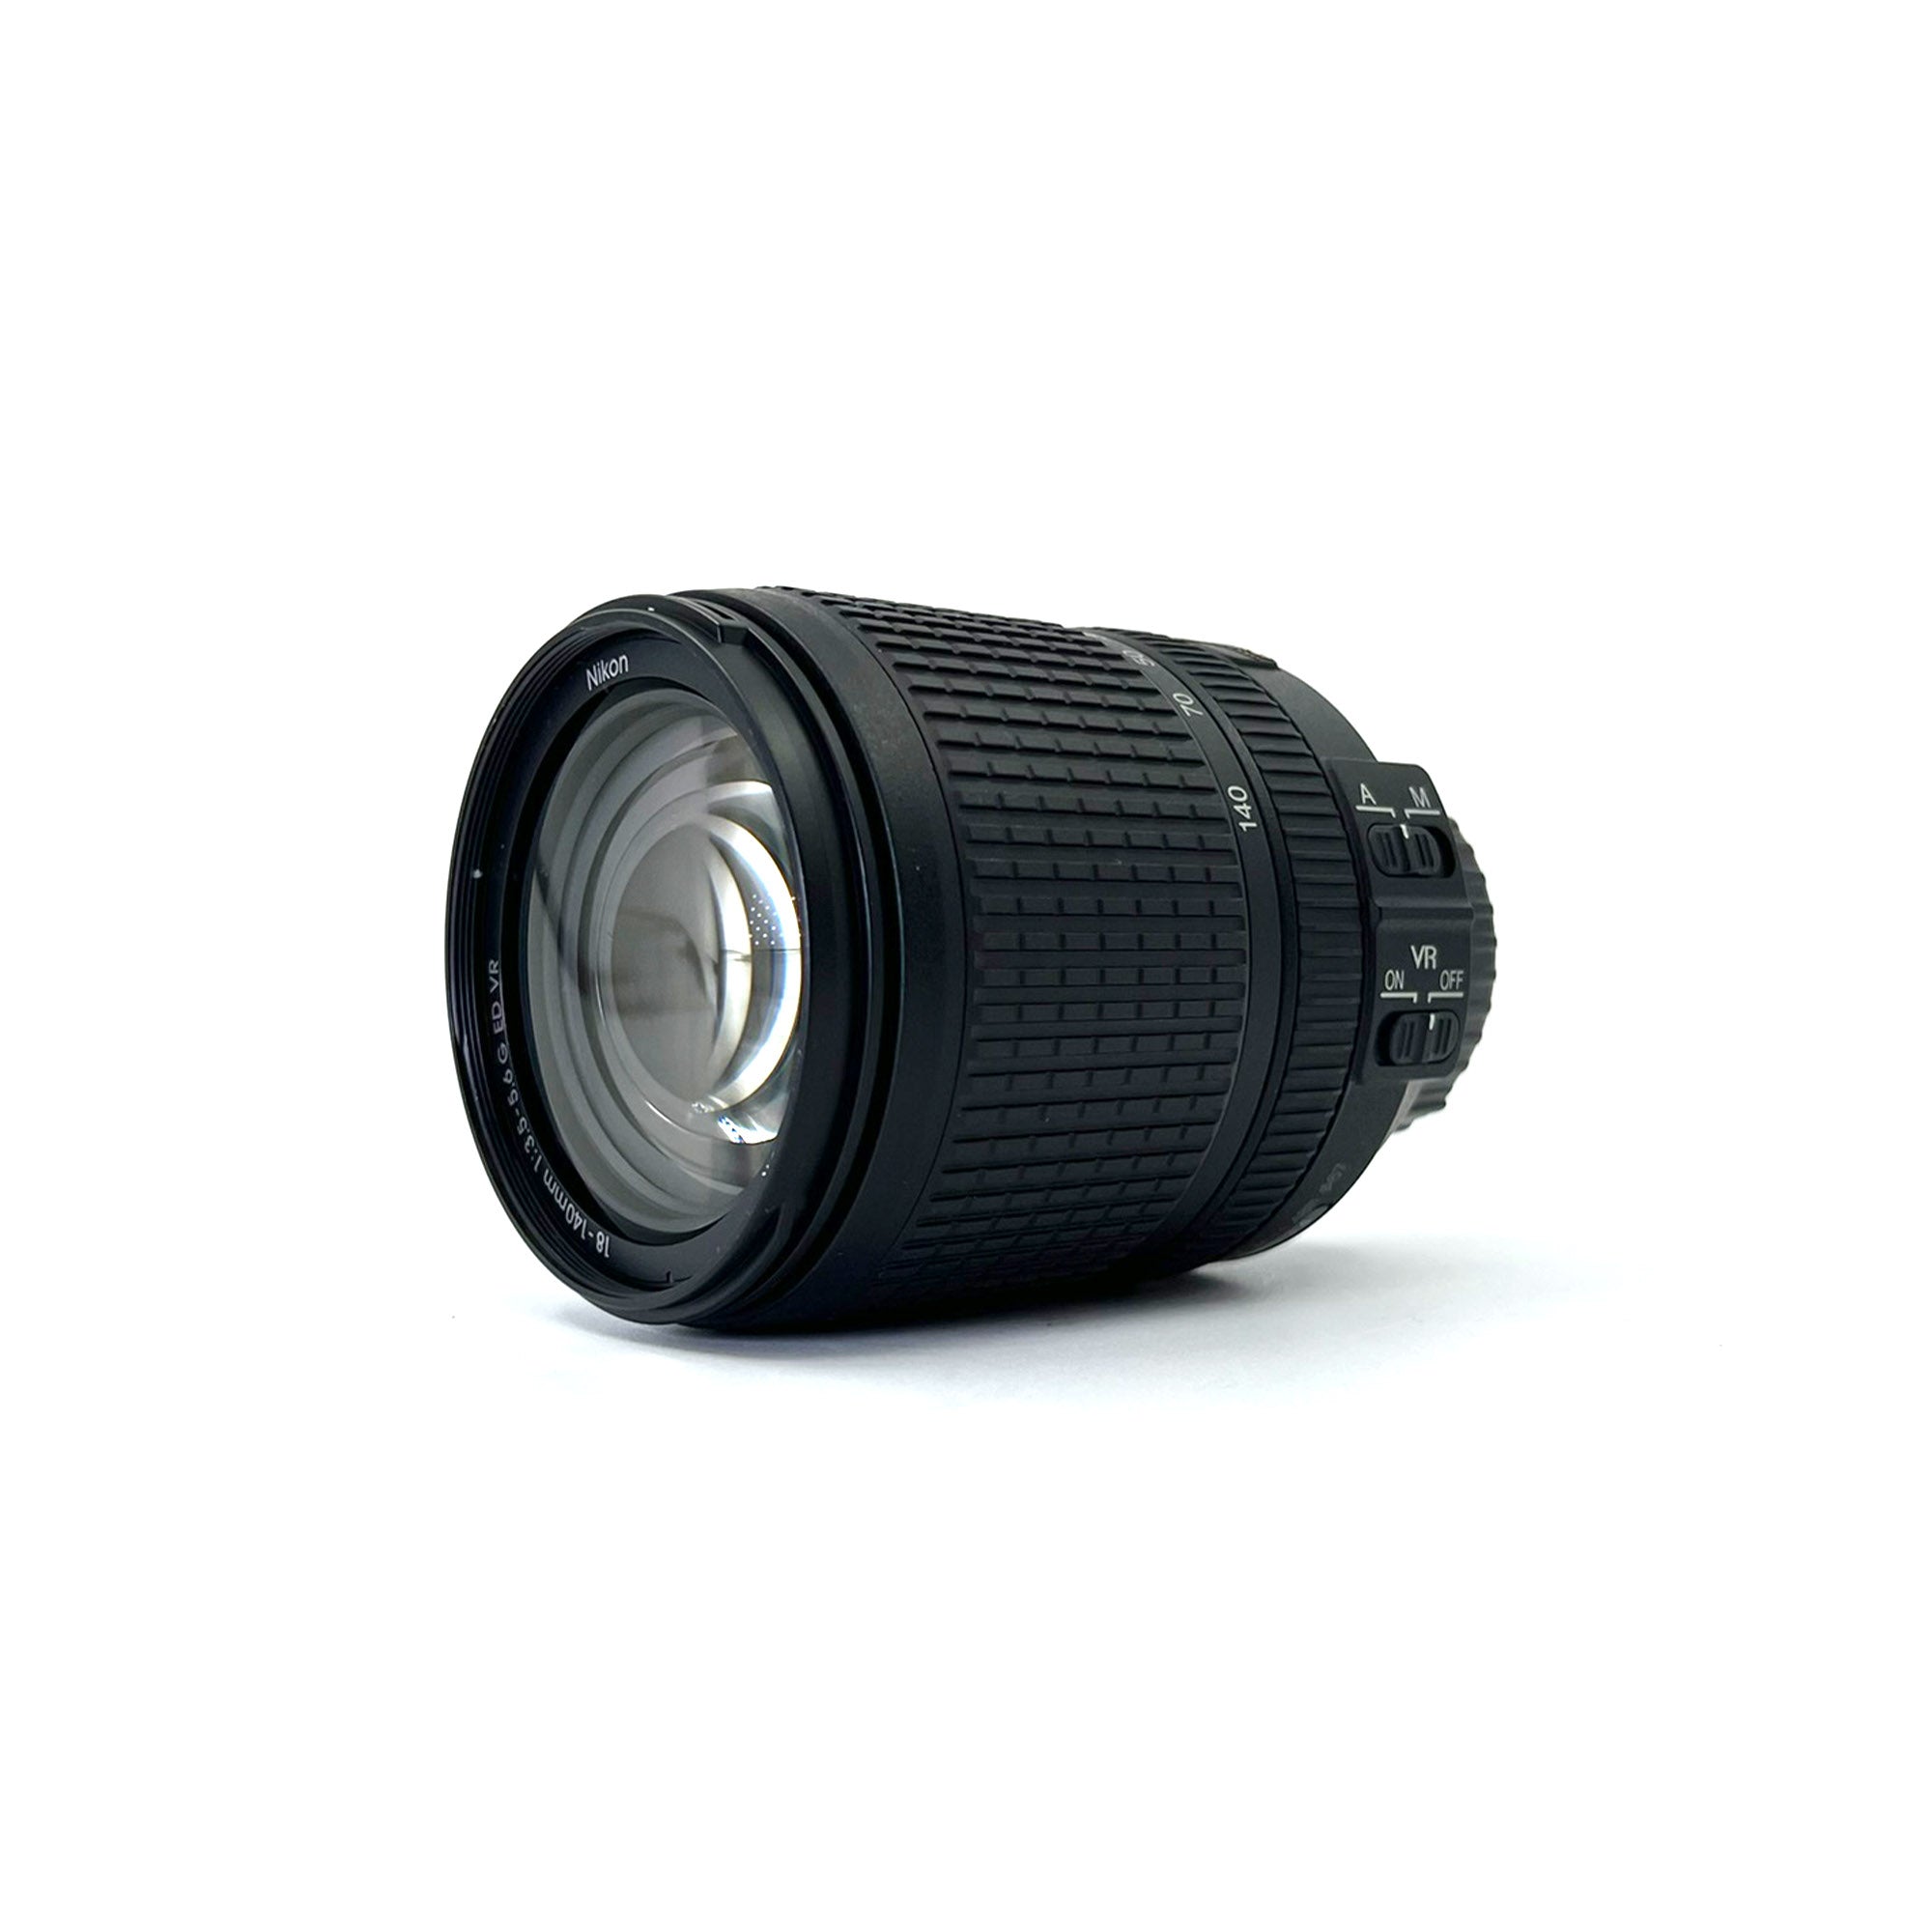 Nikon D7500 20.9MP DSLR Camera with AF-S DX NIKKOR 18-140mm f/3.5-5.6G ED VR Lens, Black-International Model